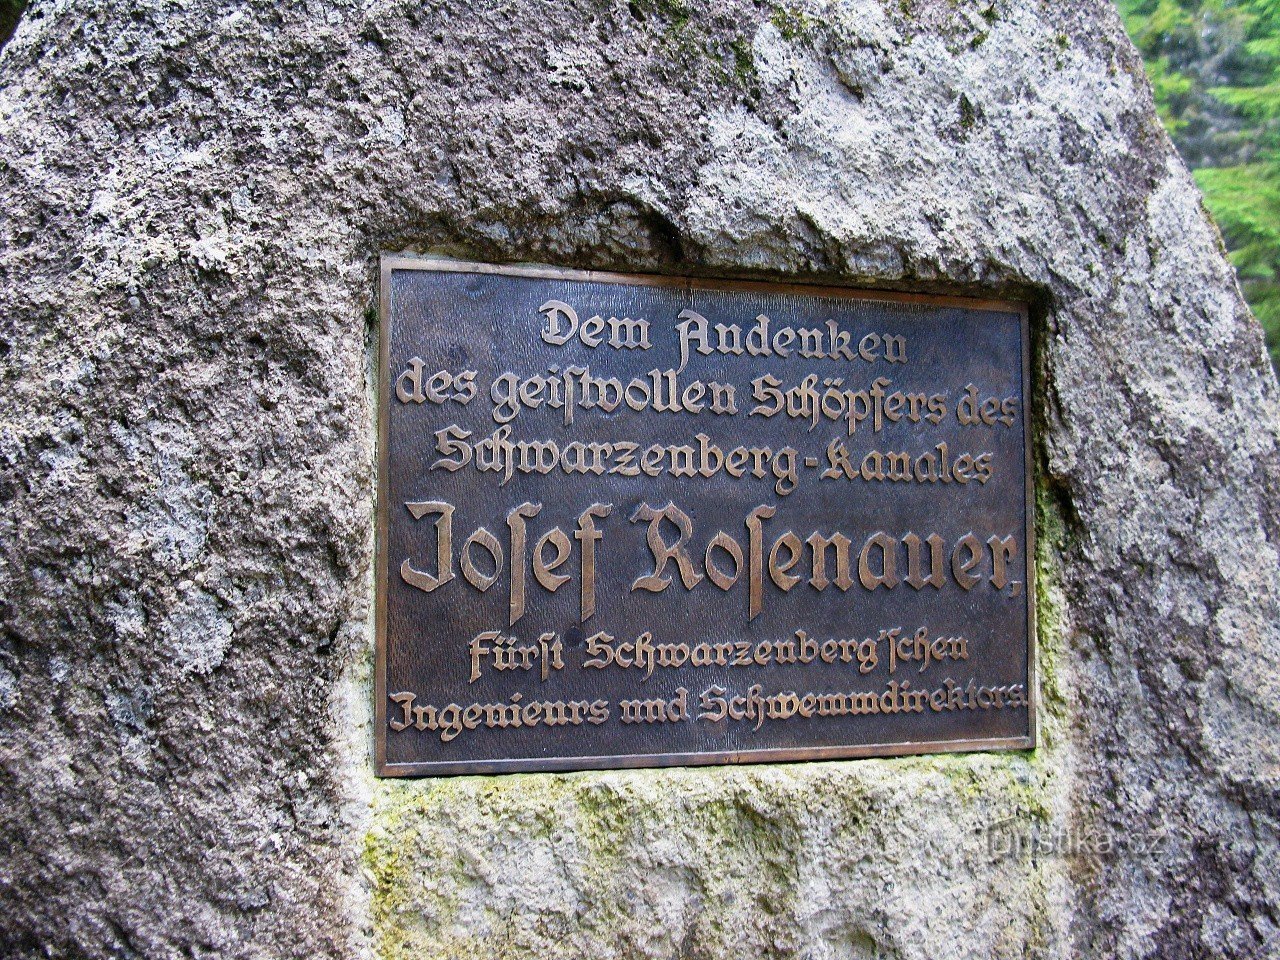 De inscriptie op het monument is in het Duits